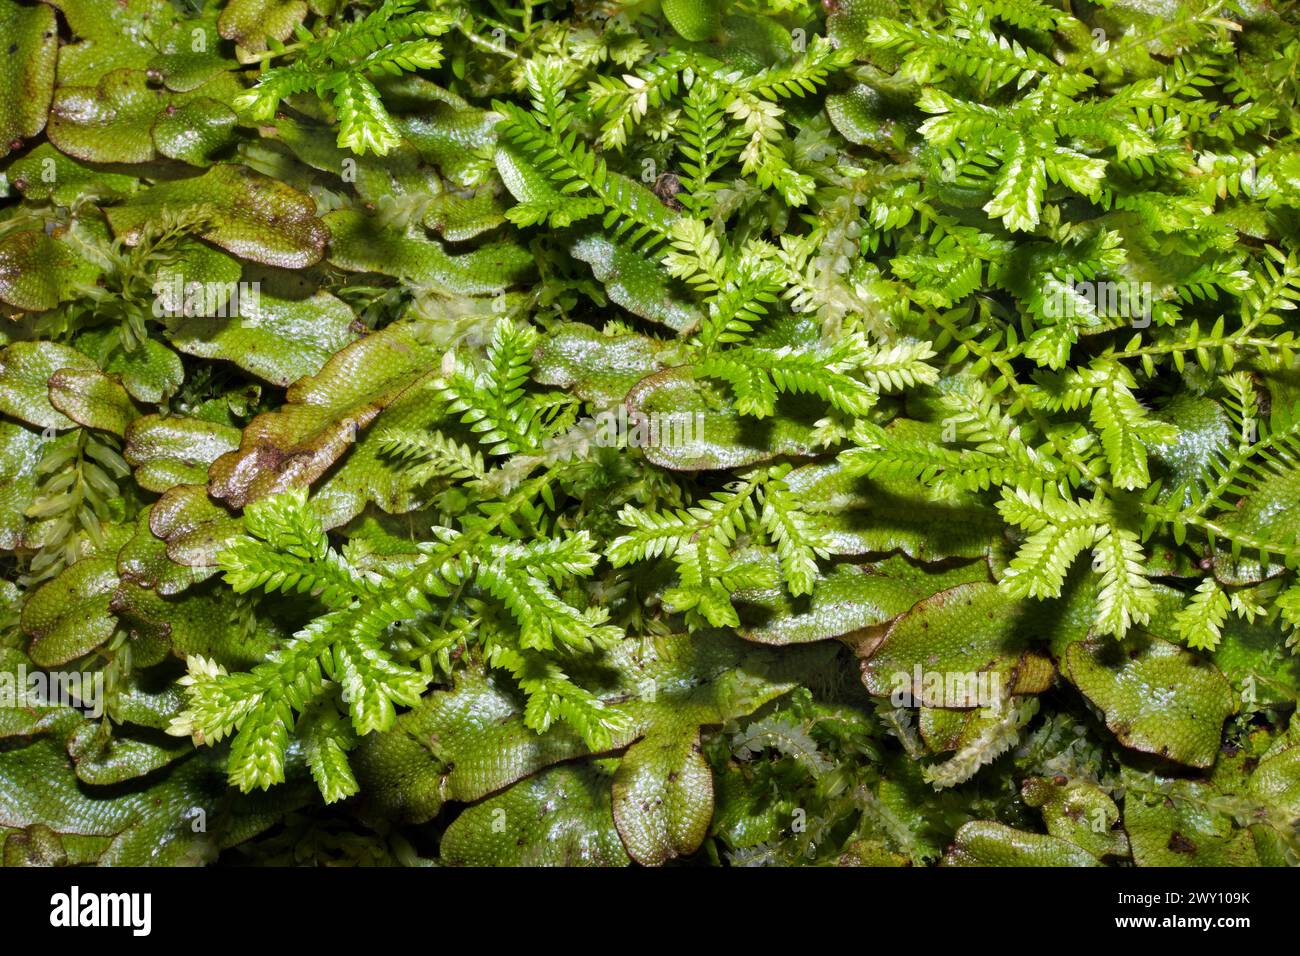 Selaginella kraussiana (afrikanisches Clubmoos) kann in schattigen Bereichen dichte Matten bilden. Sie kommt natürlich in Teilen Afrikas südlich der Sahara und Makaronesien vor. Stockfoto